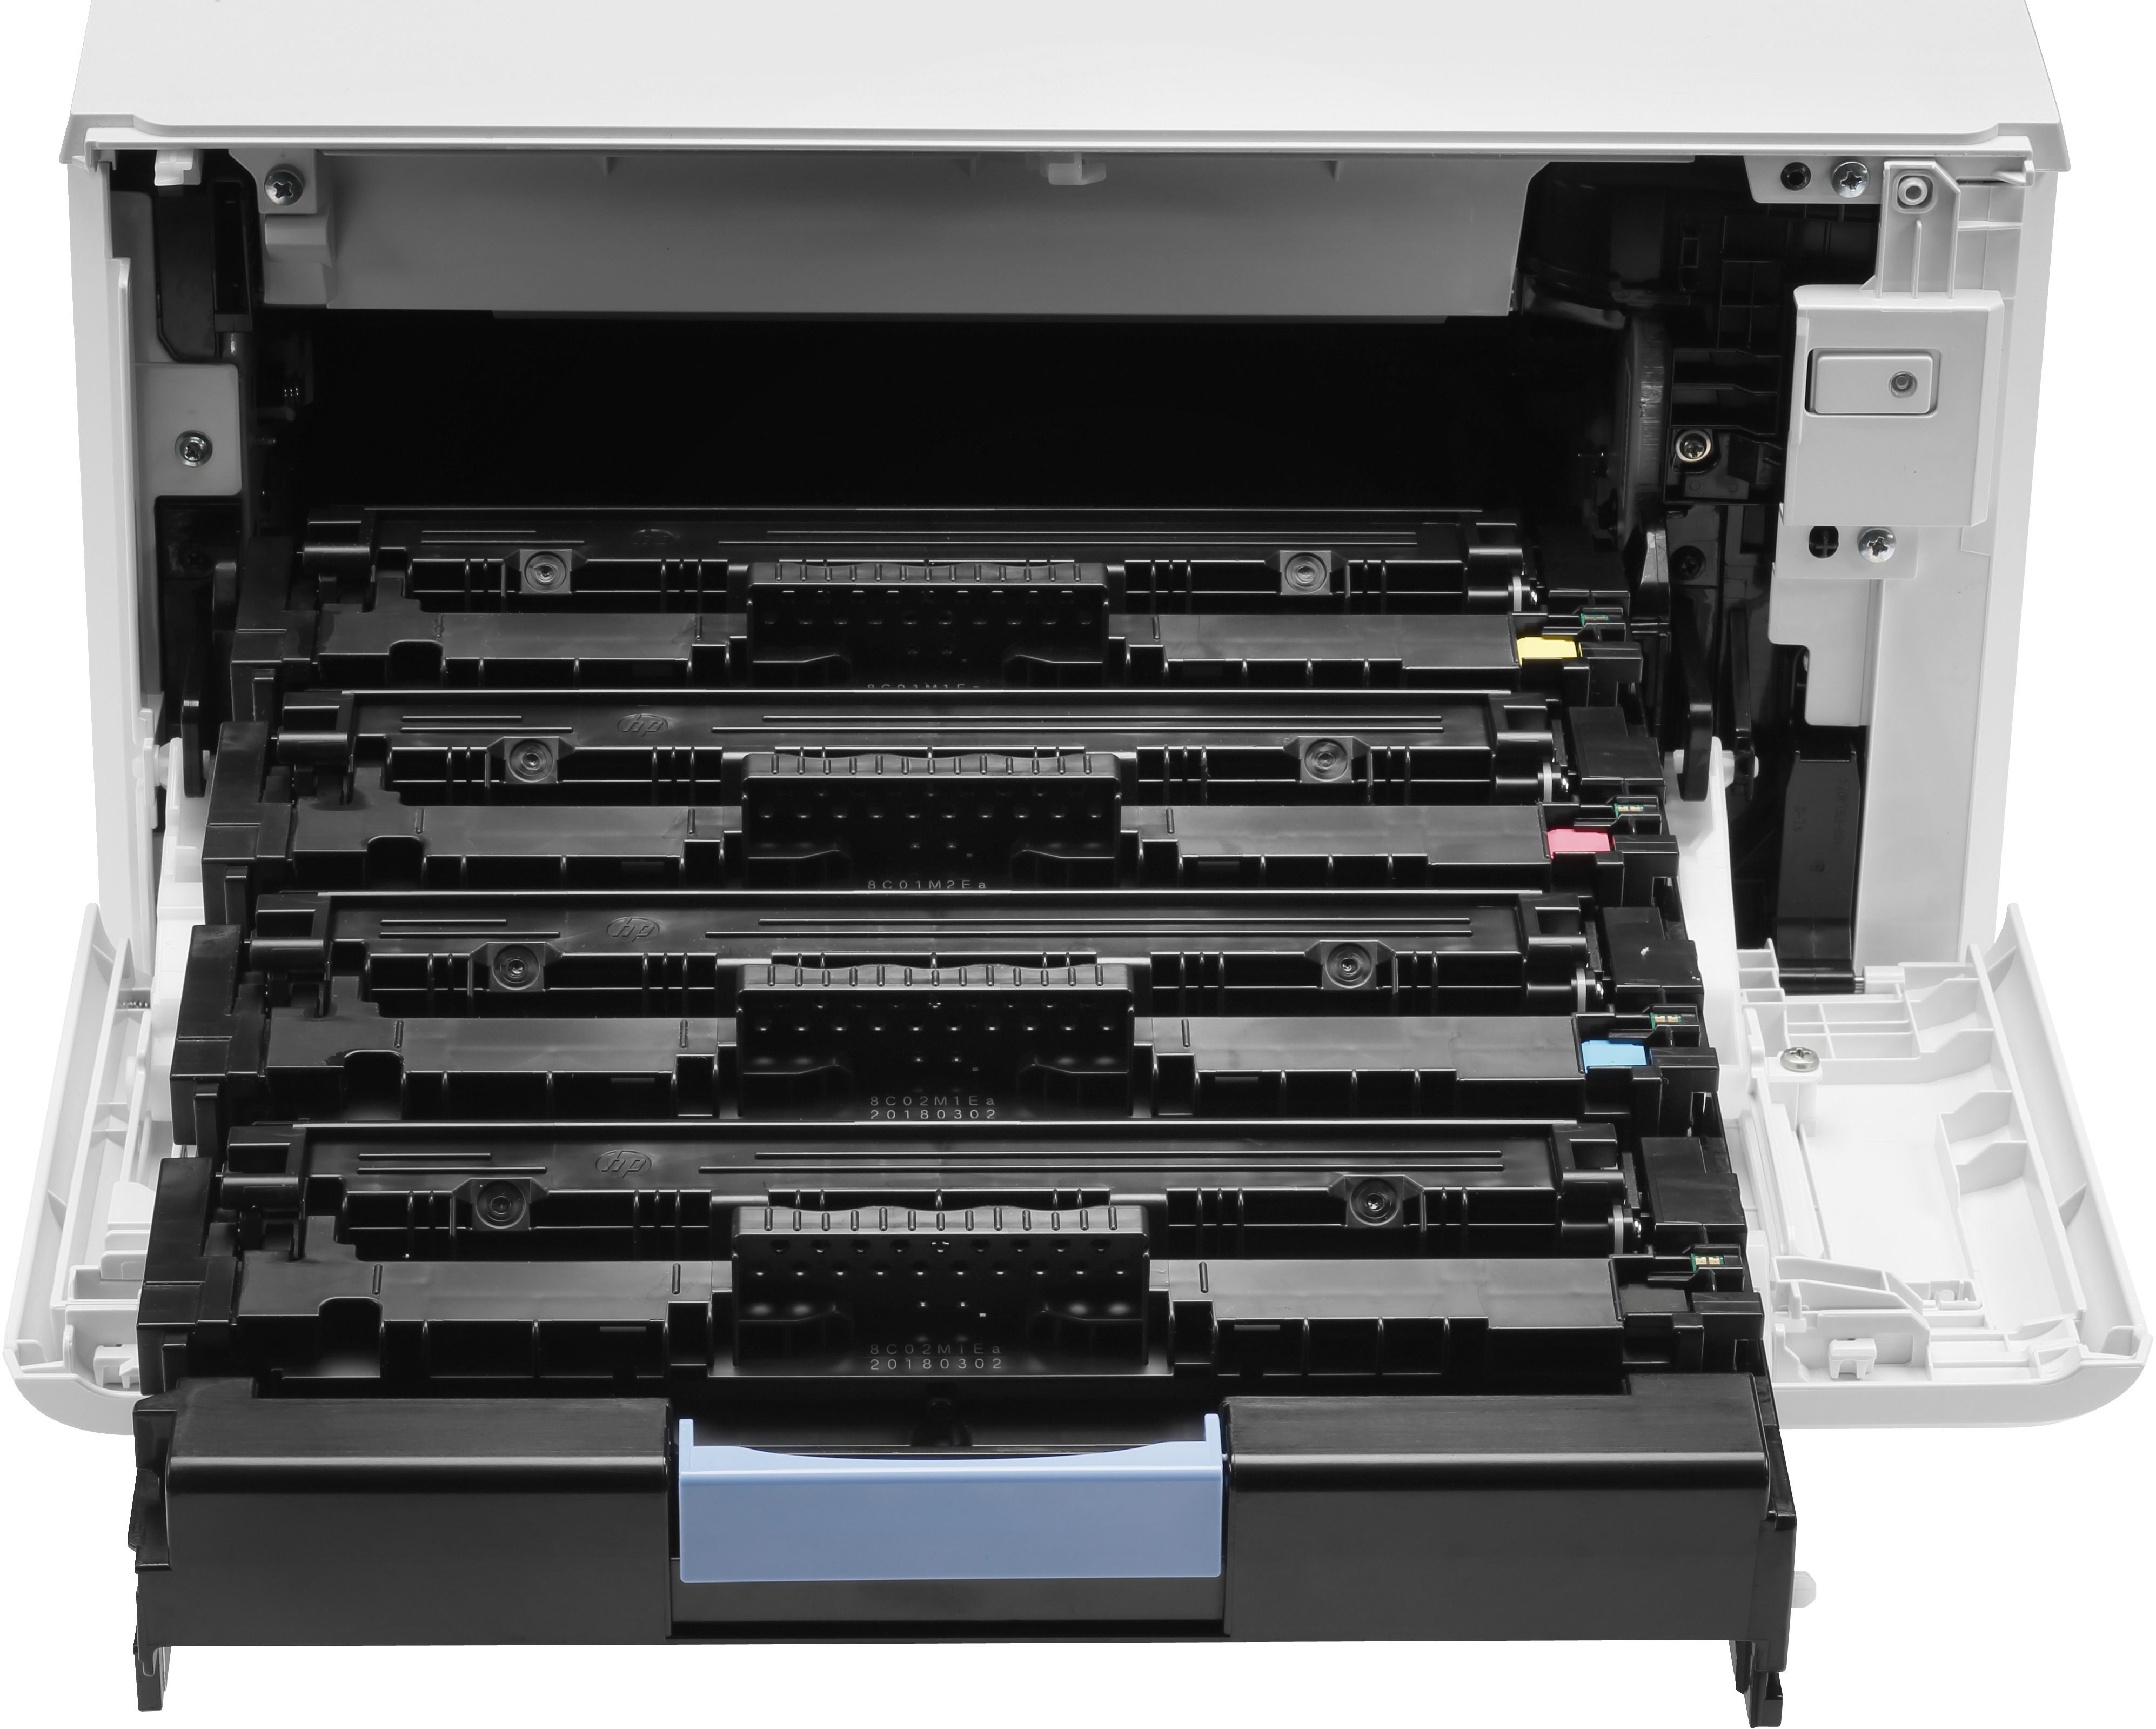 HP Color LaserJet Pro MFP M479fdn - Multifunktionsdrucker - Farbe - Laser - Legal (216 x 356 mm)